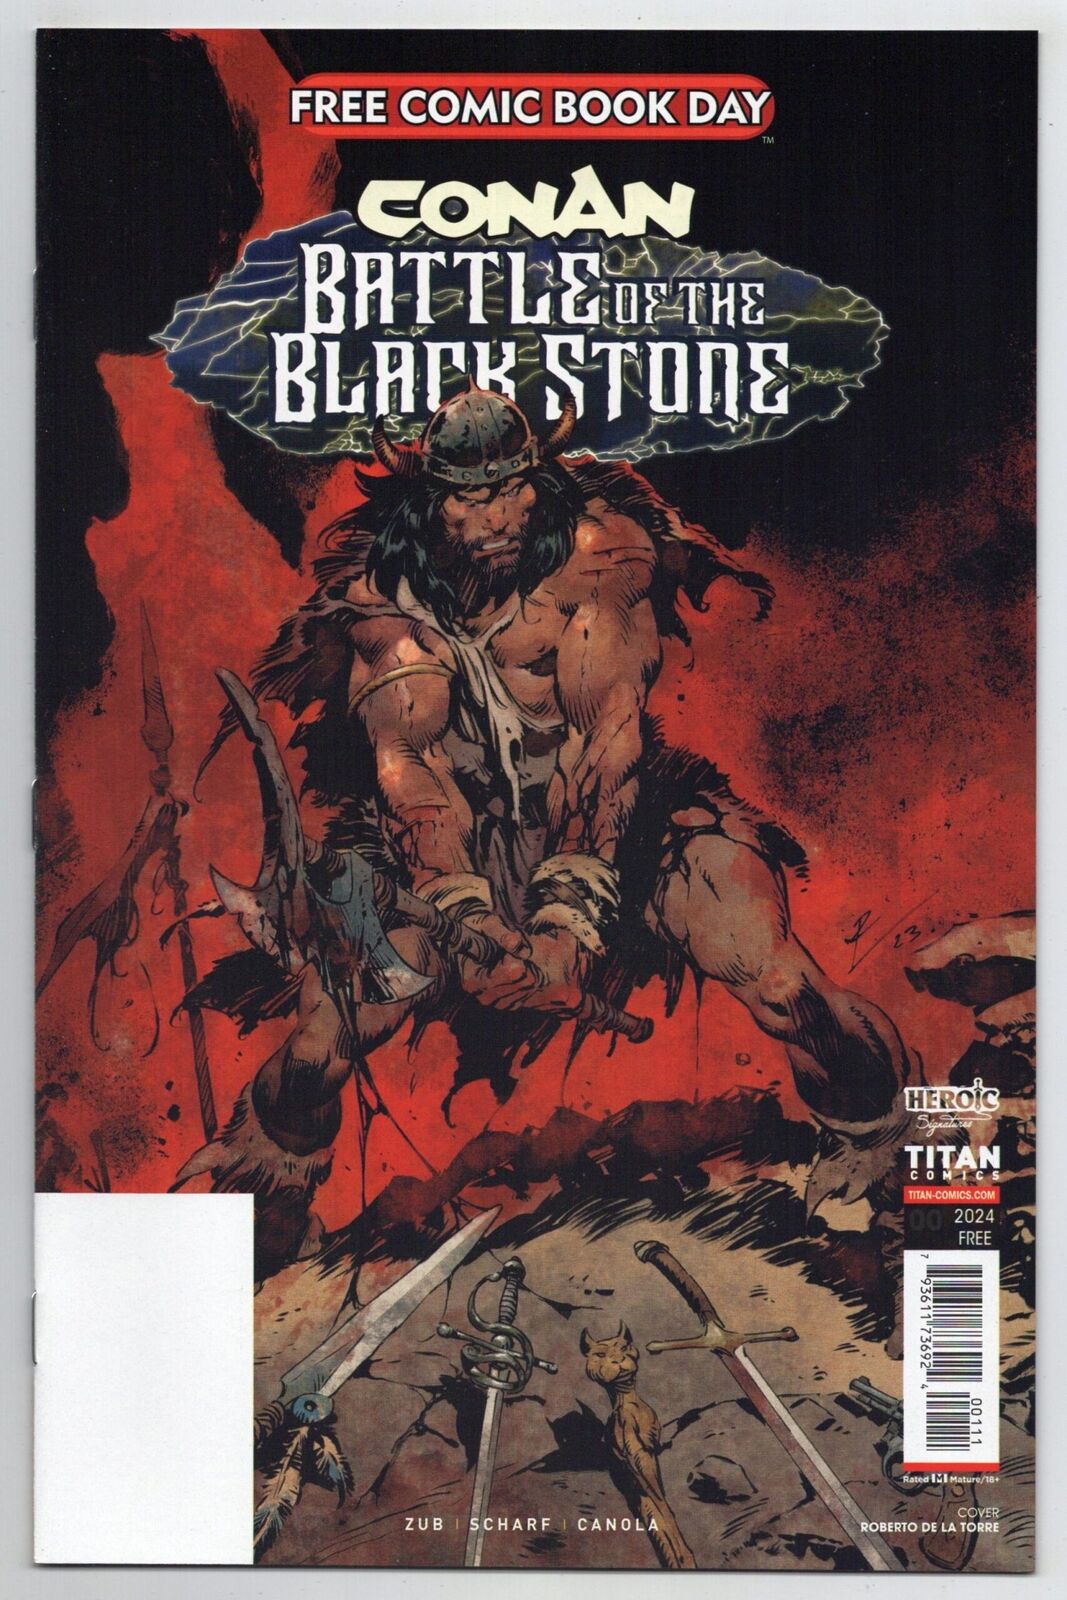 FCBD 2024 Conan Battle Of The Black Stone #1 Promo Unstamped (Titan)